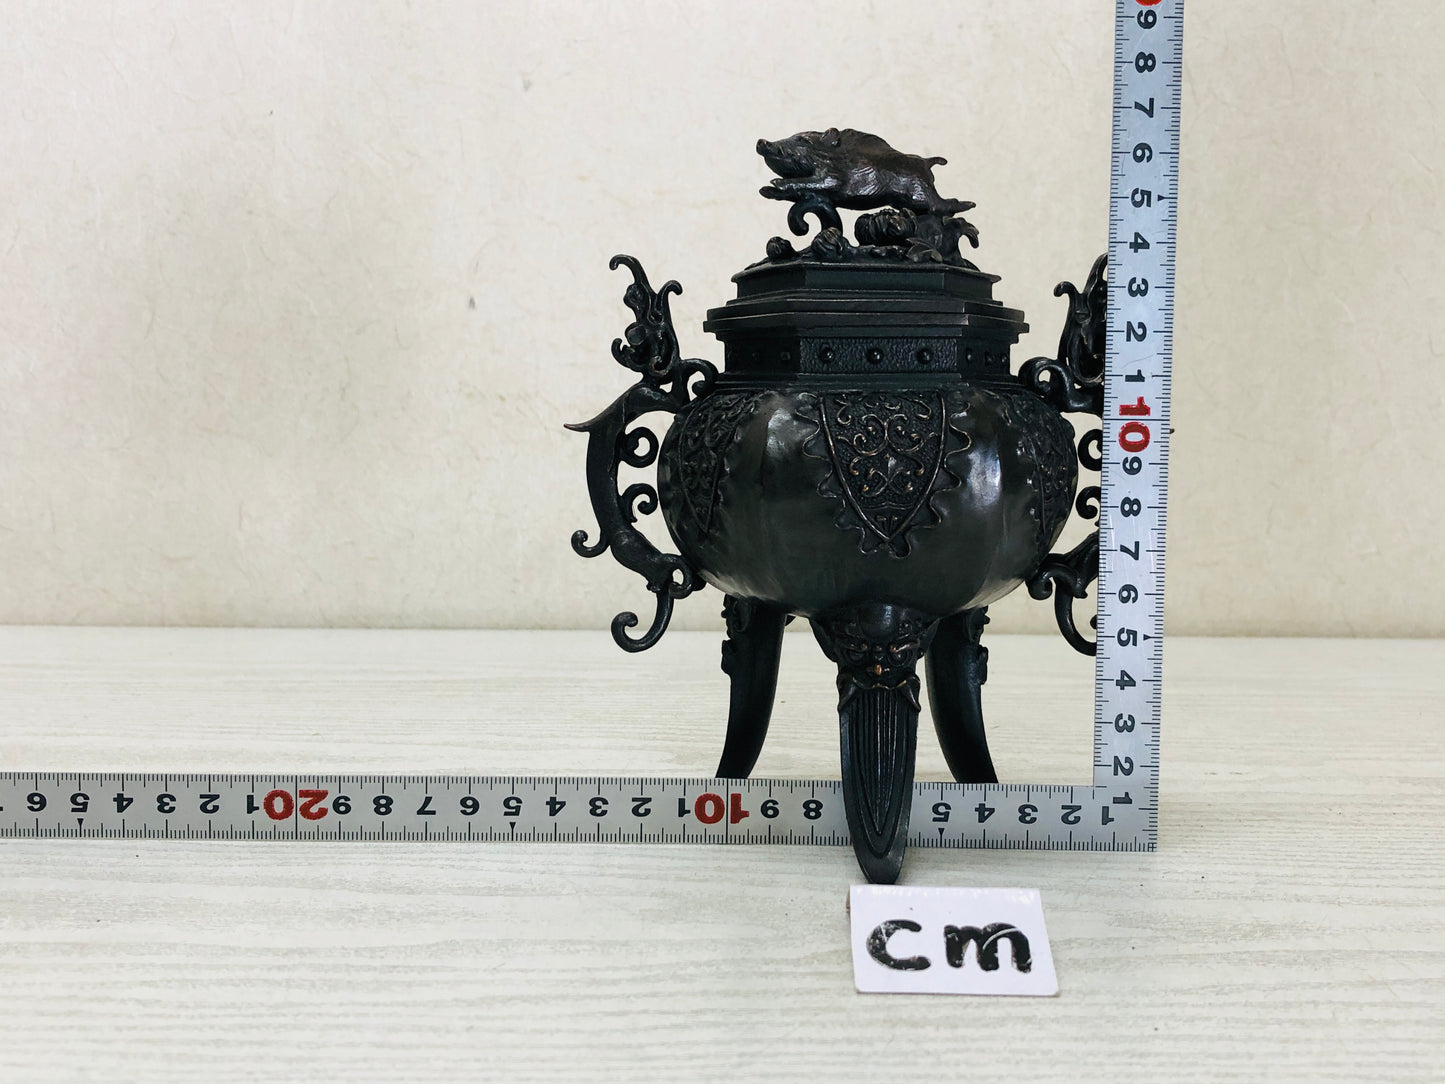 Y3353 KOURO Copper signed box Japan antique fragrance aroma incense burner